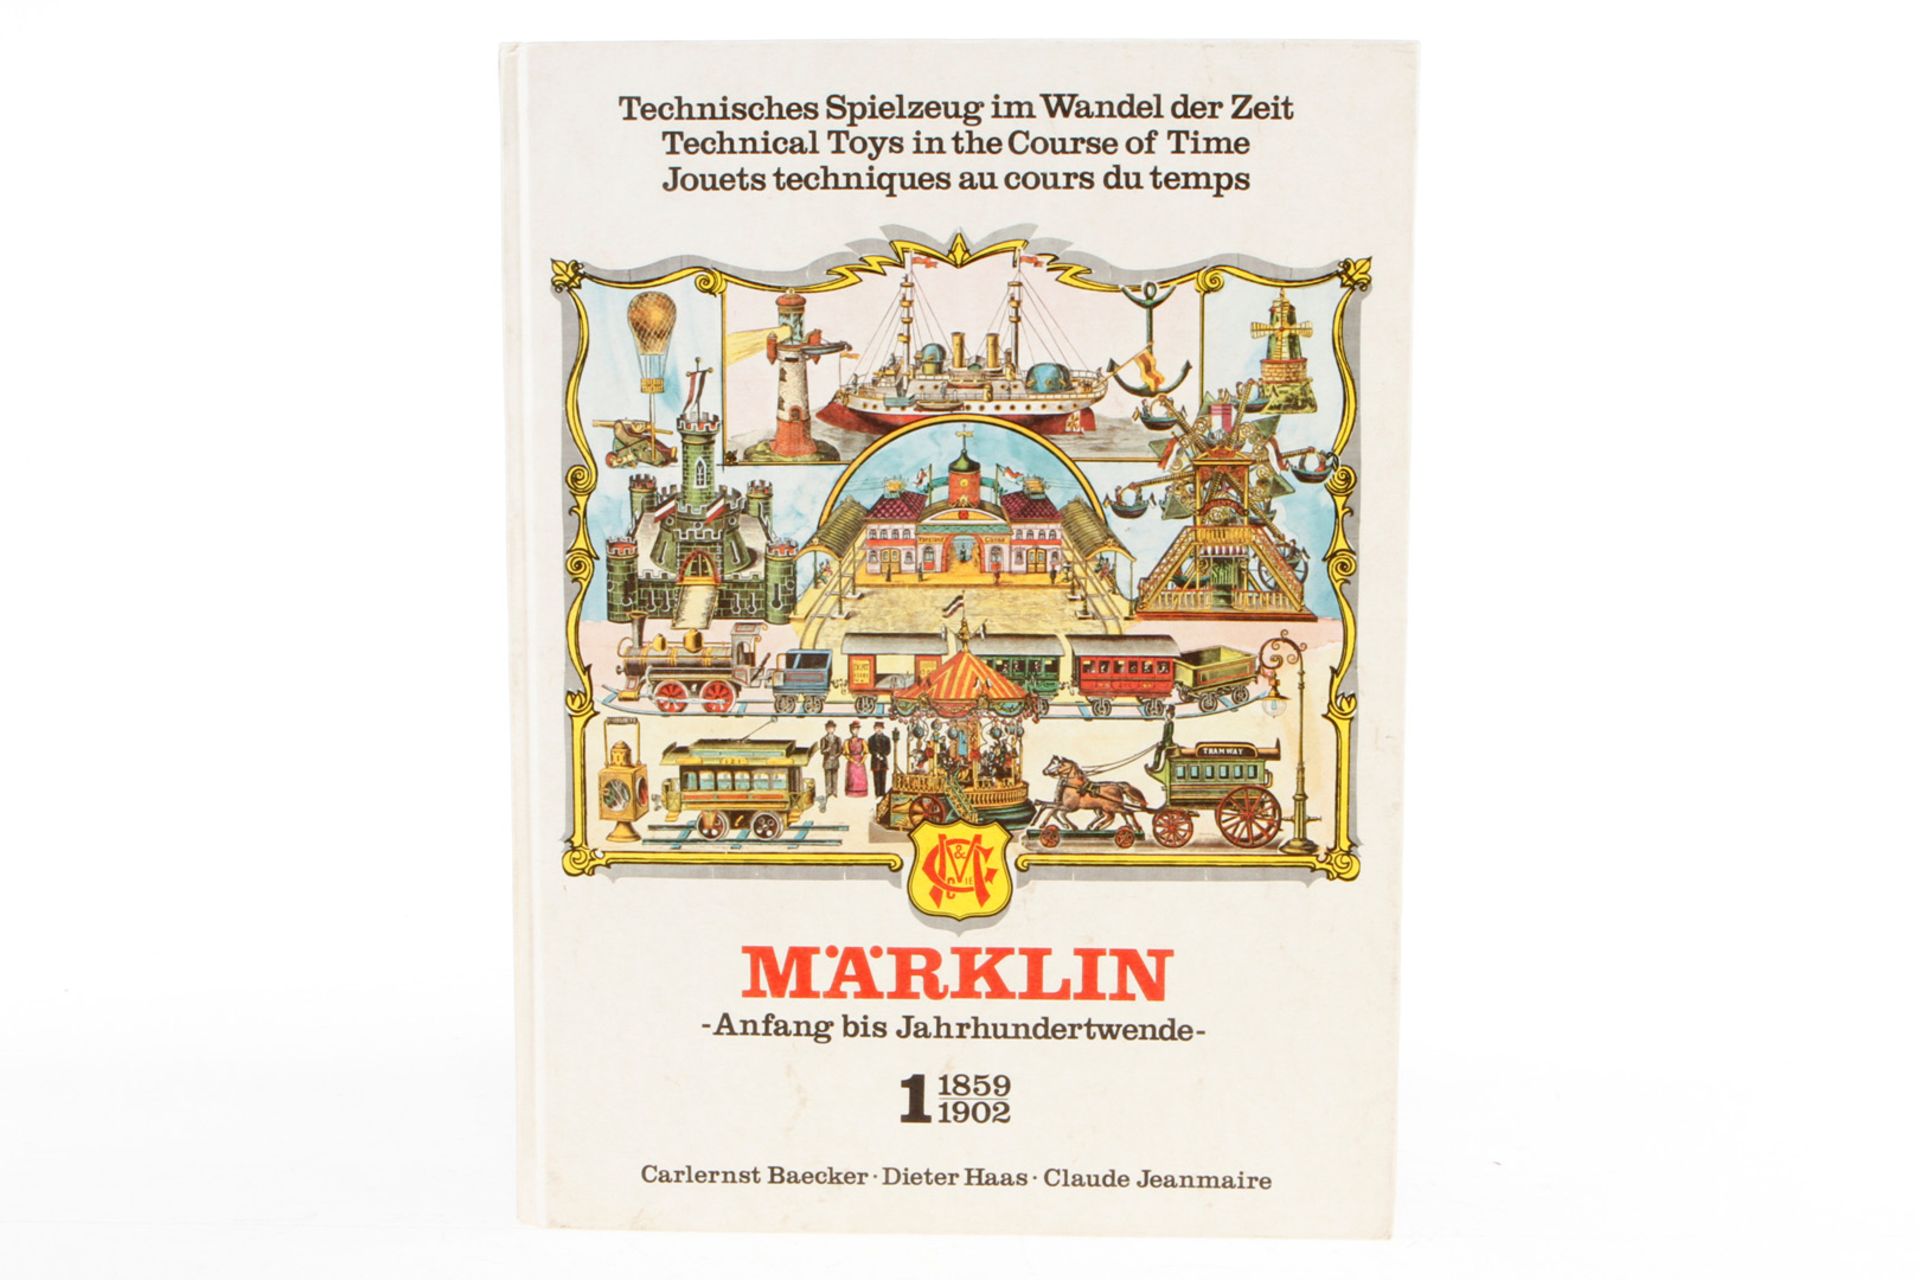 Märklin-Buch ”Technisches...” Band 1, Alterungsspuren